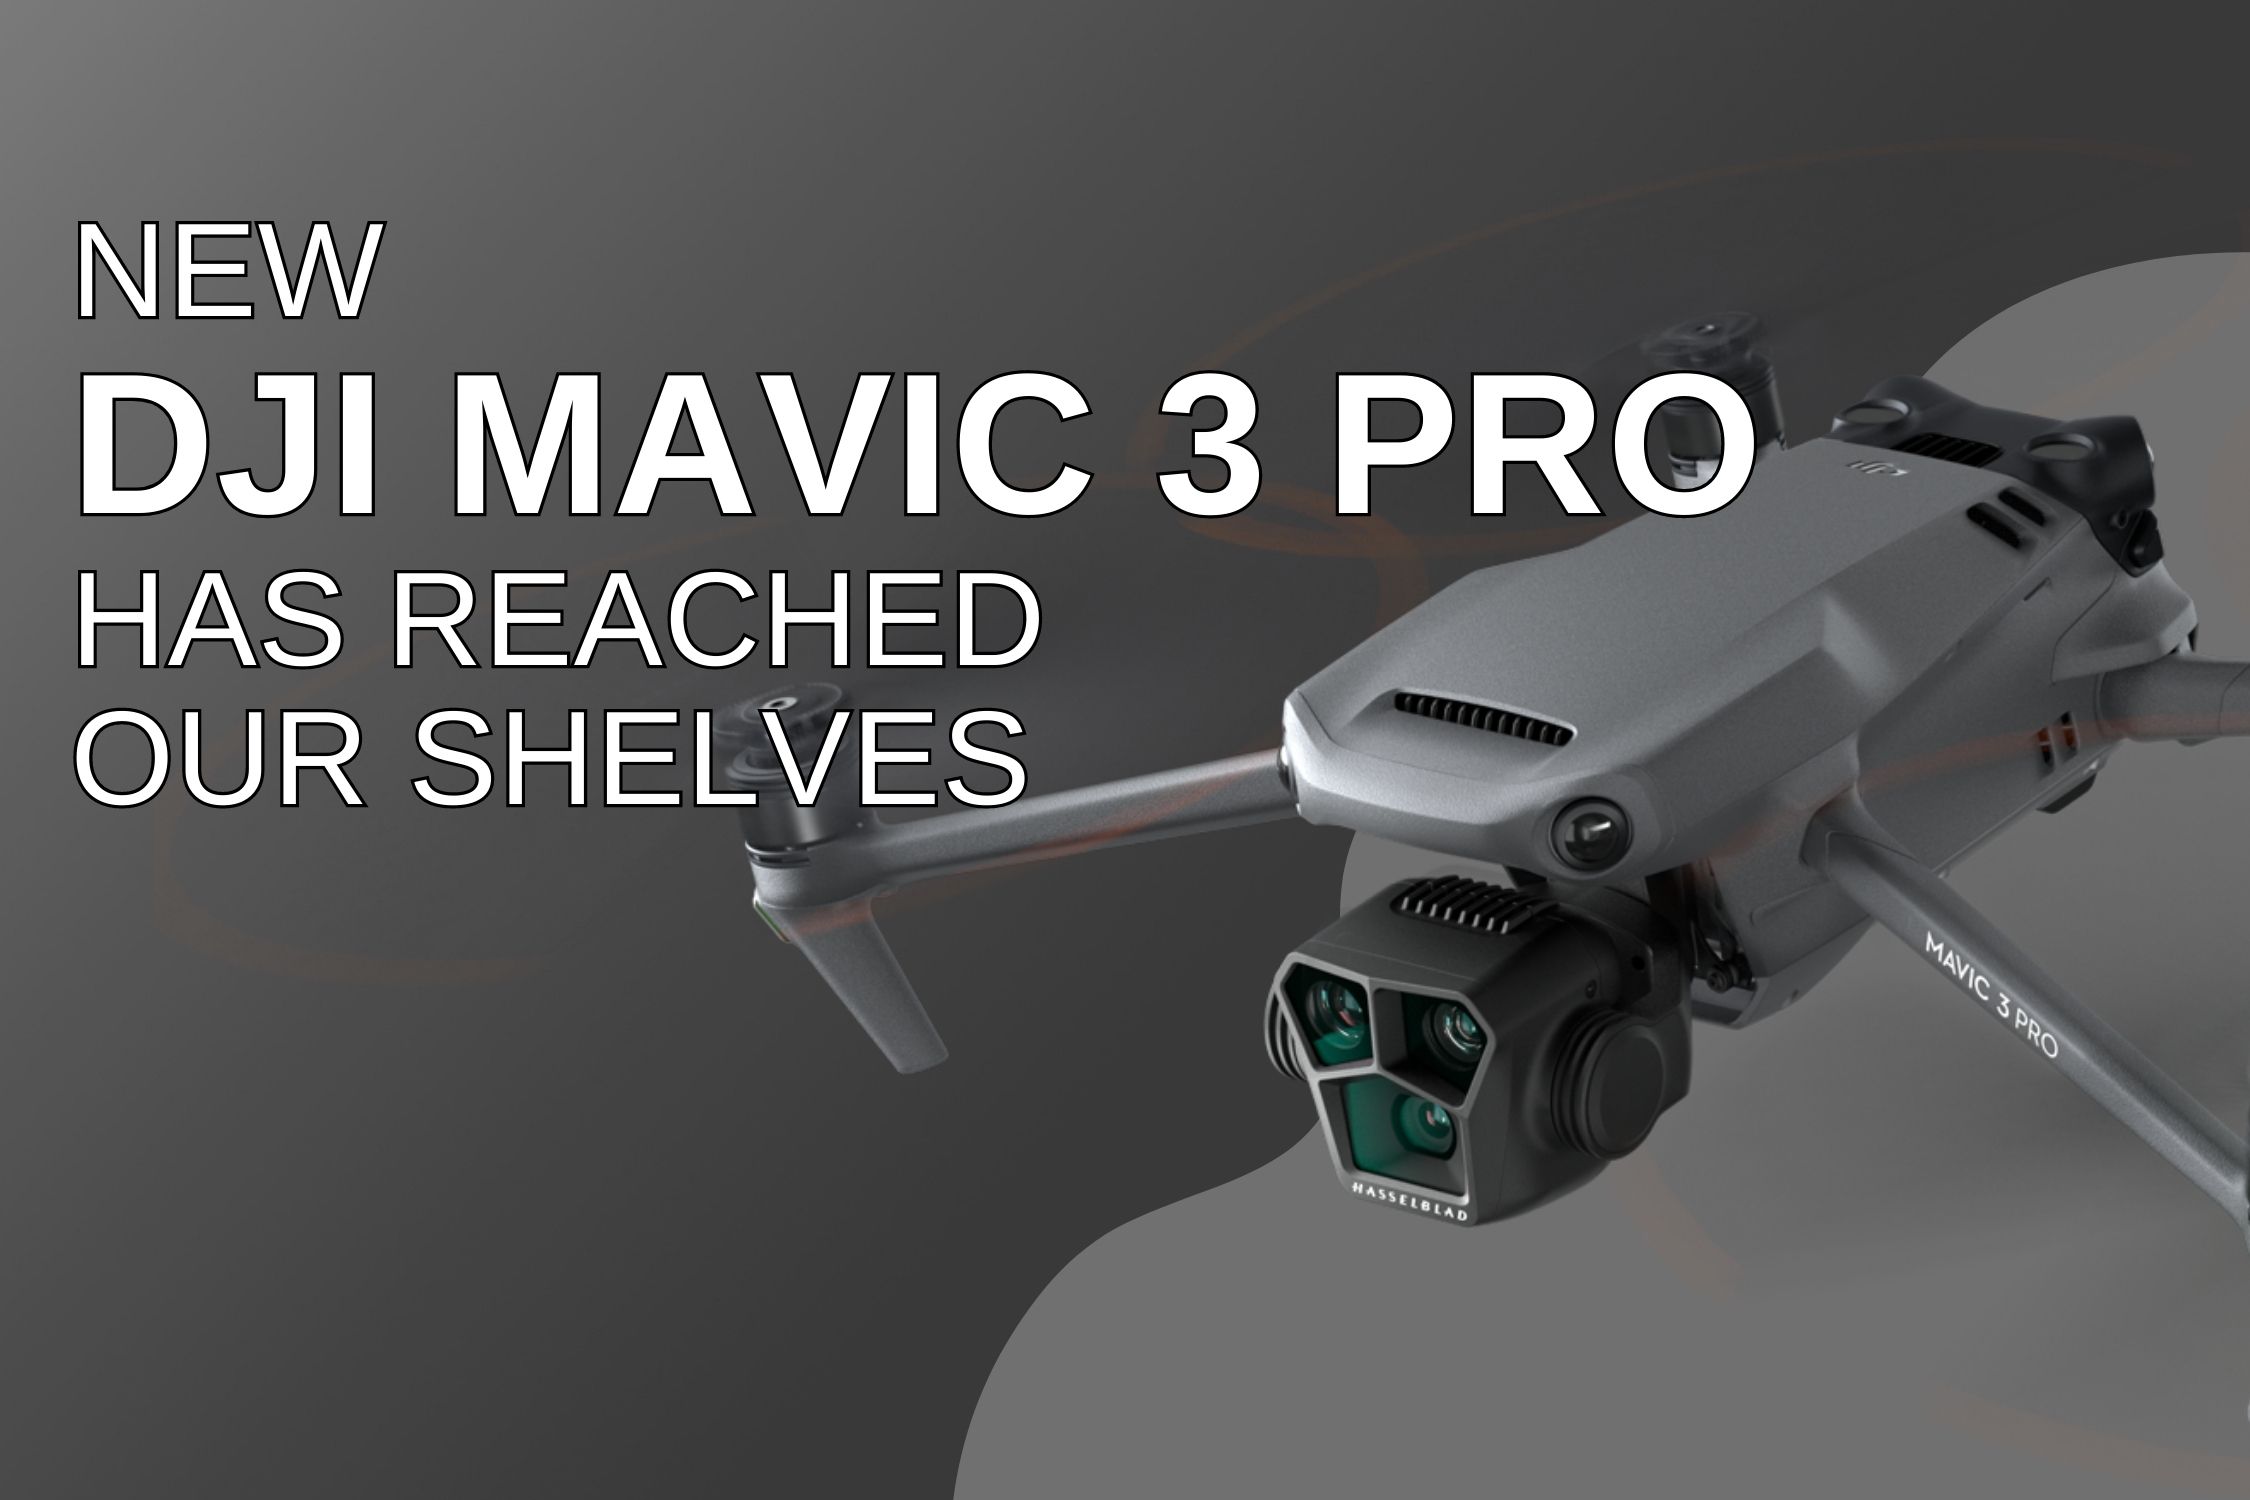 DJI Mavic 3 Pro drones